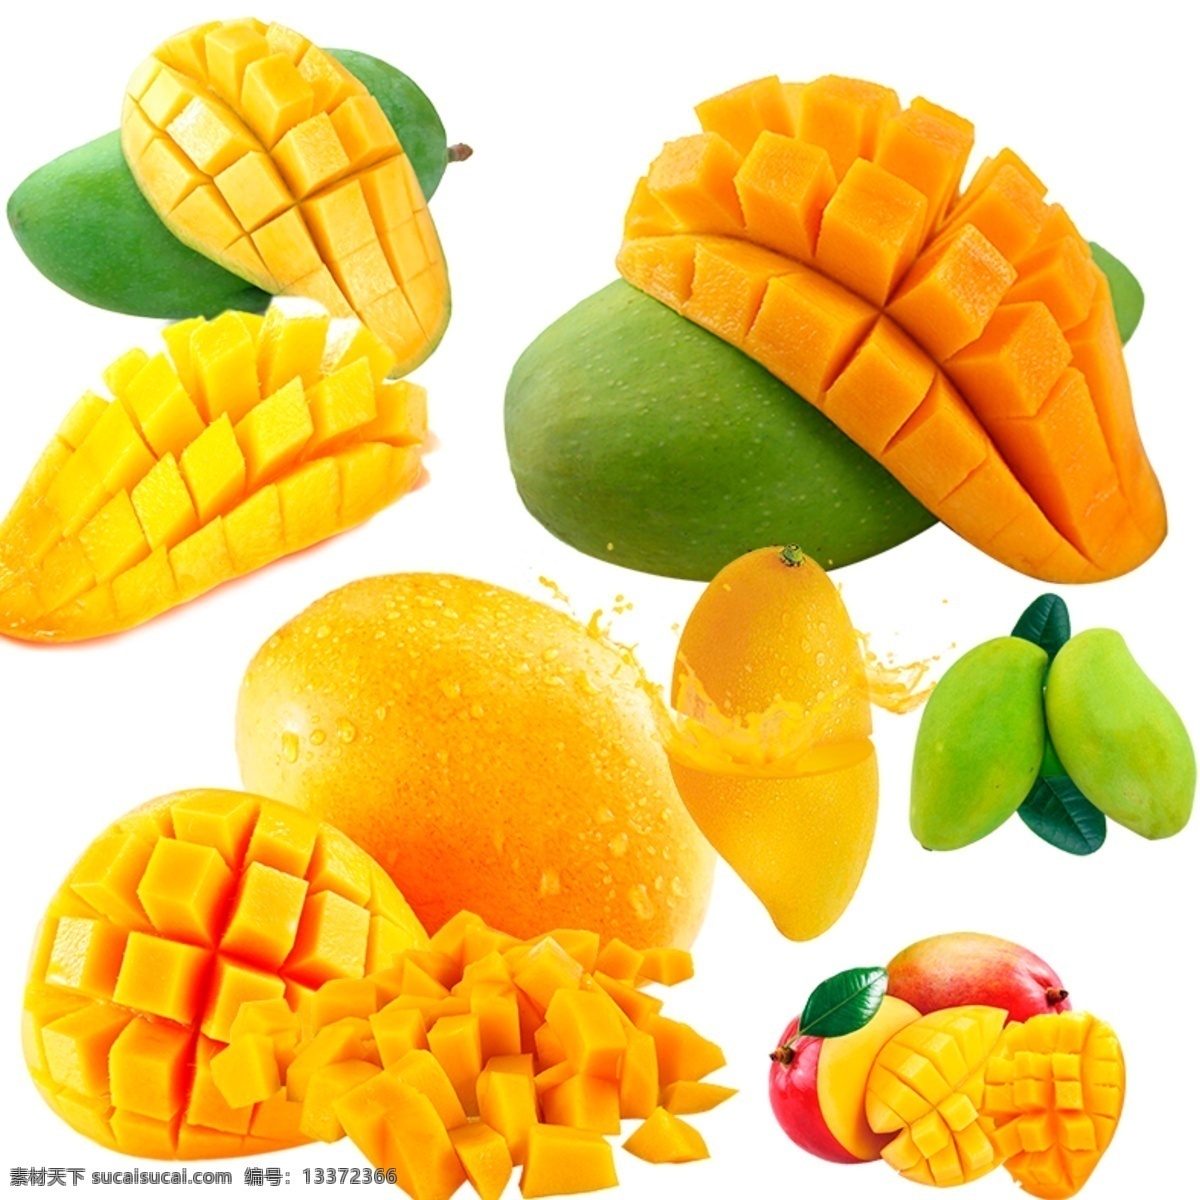 芒果图片 芒果 热带水果 水果 芒果元素 芒果素材